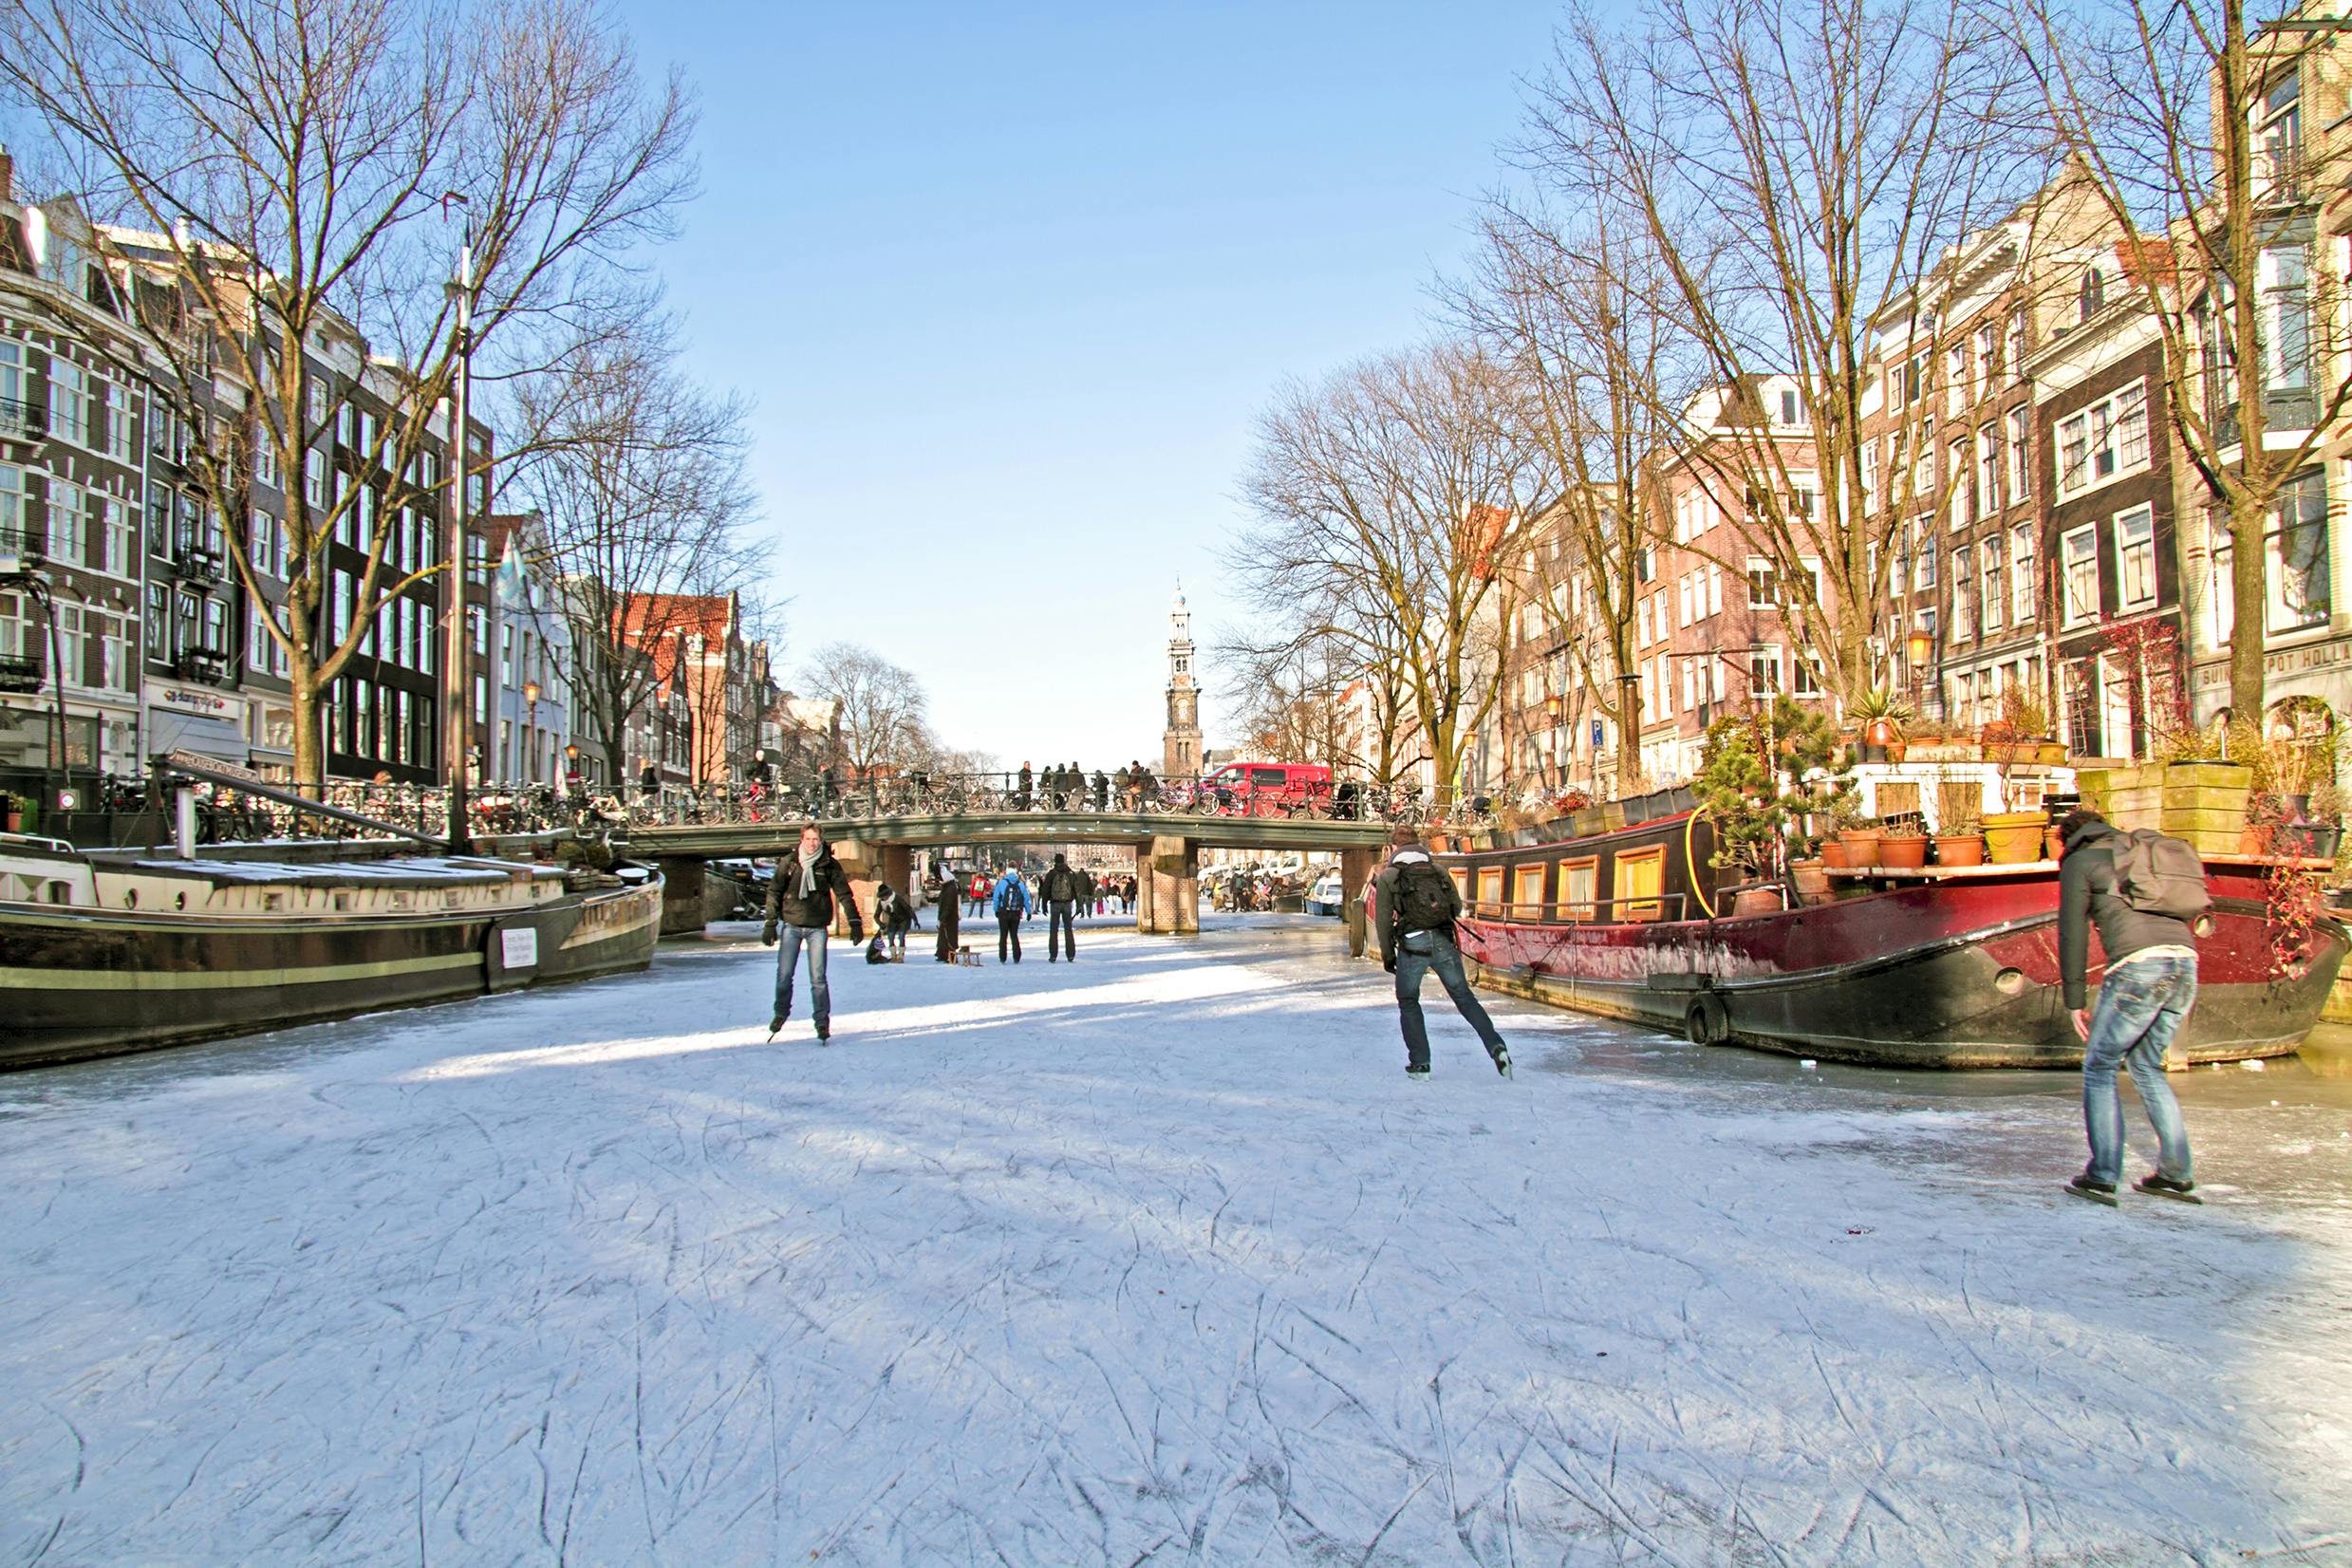 Zimowa wycieczka po Amsterdamie